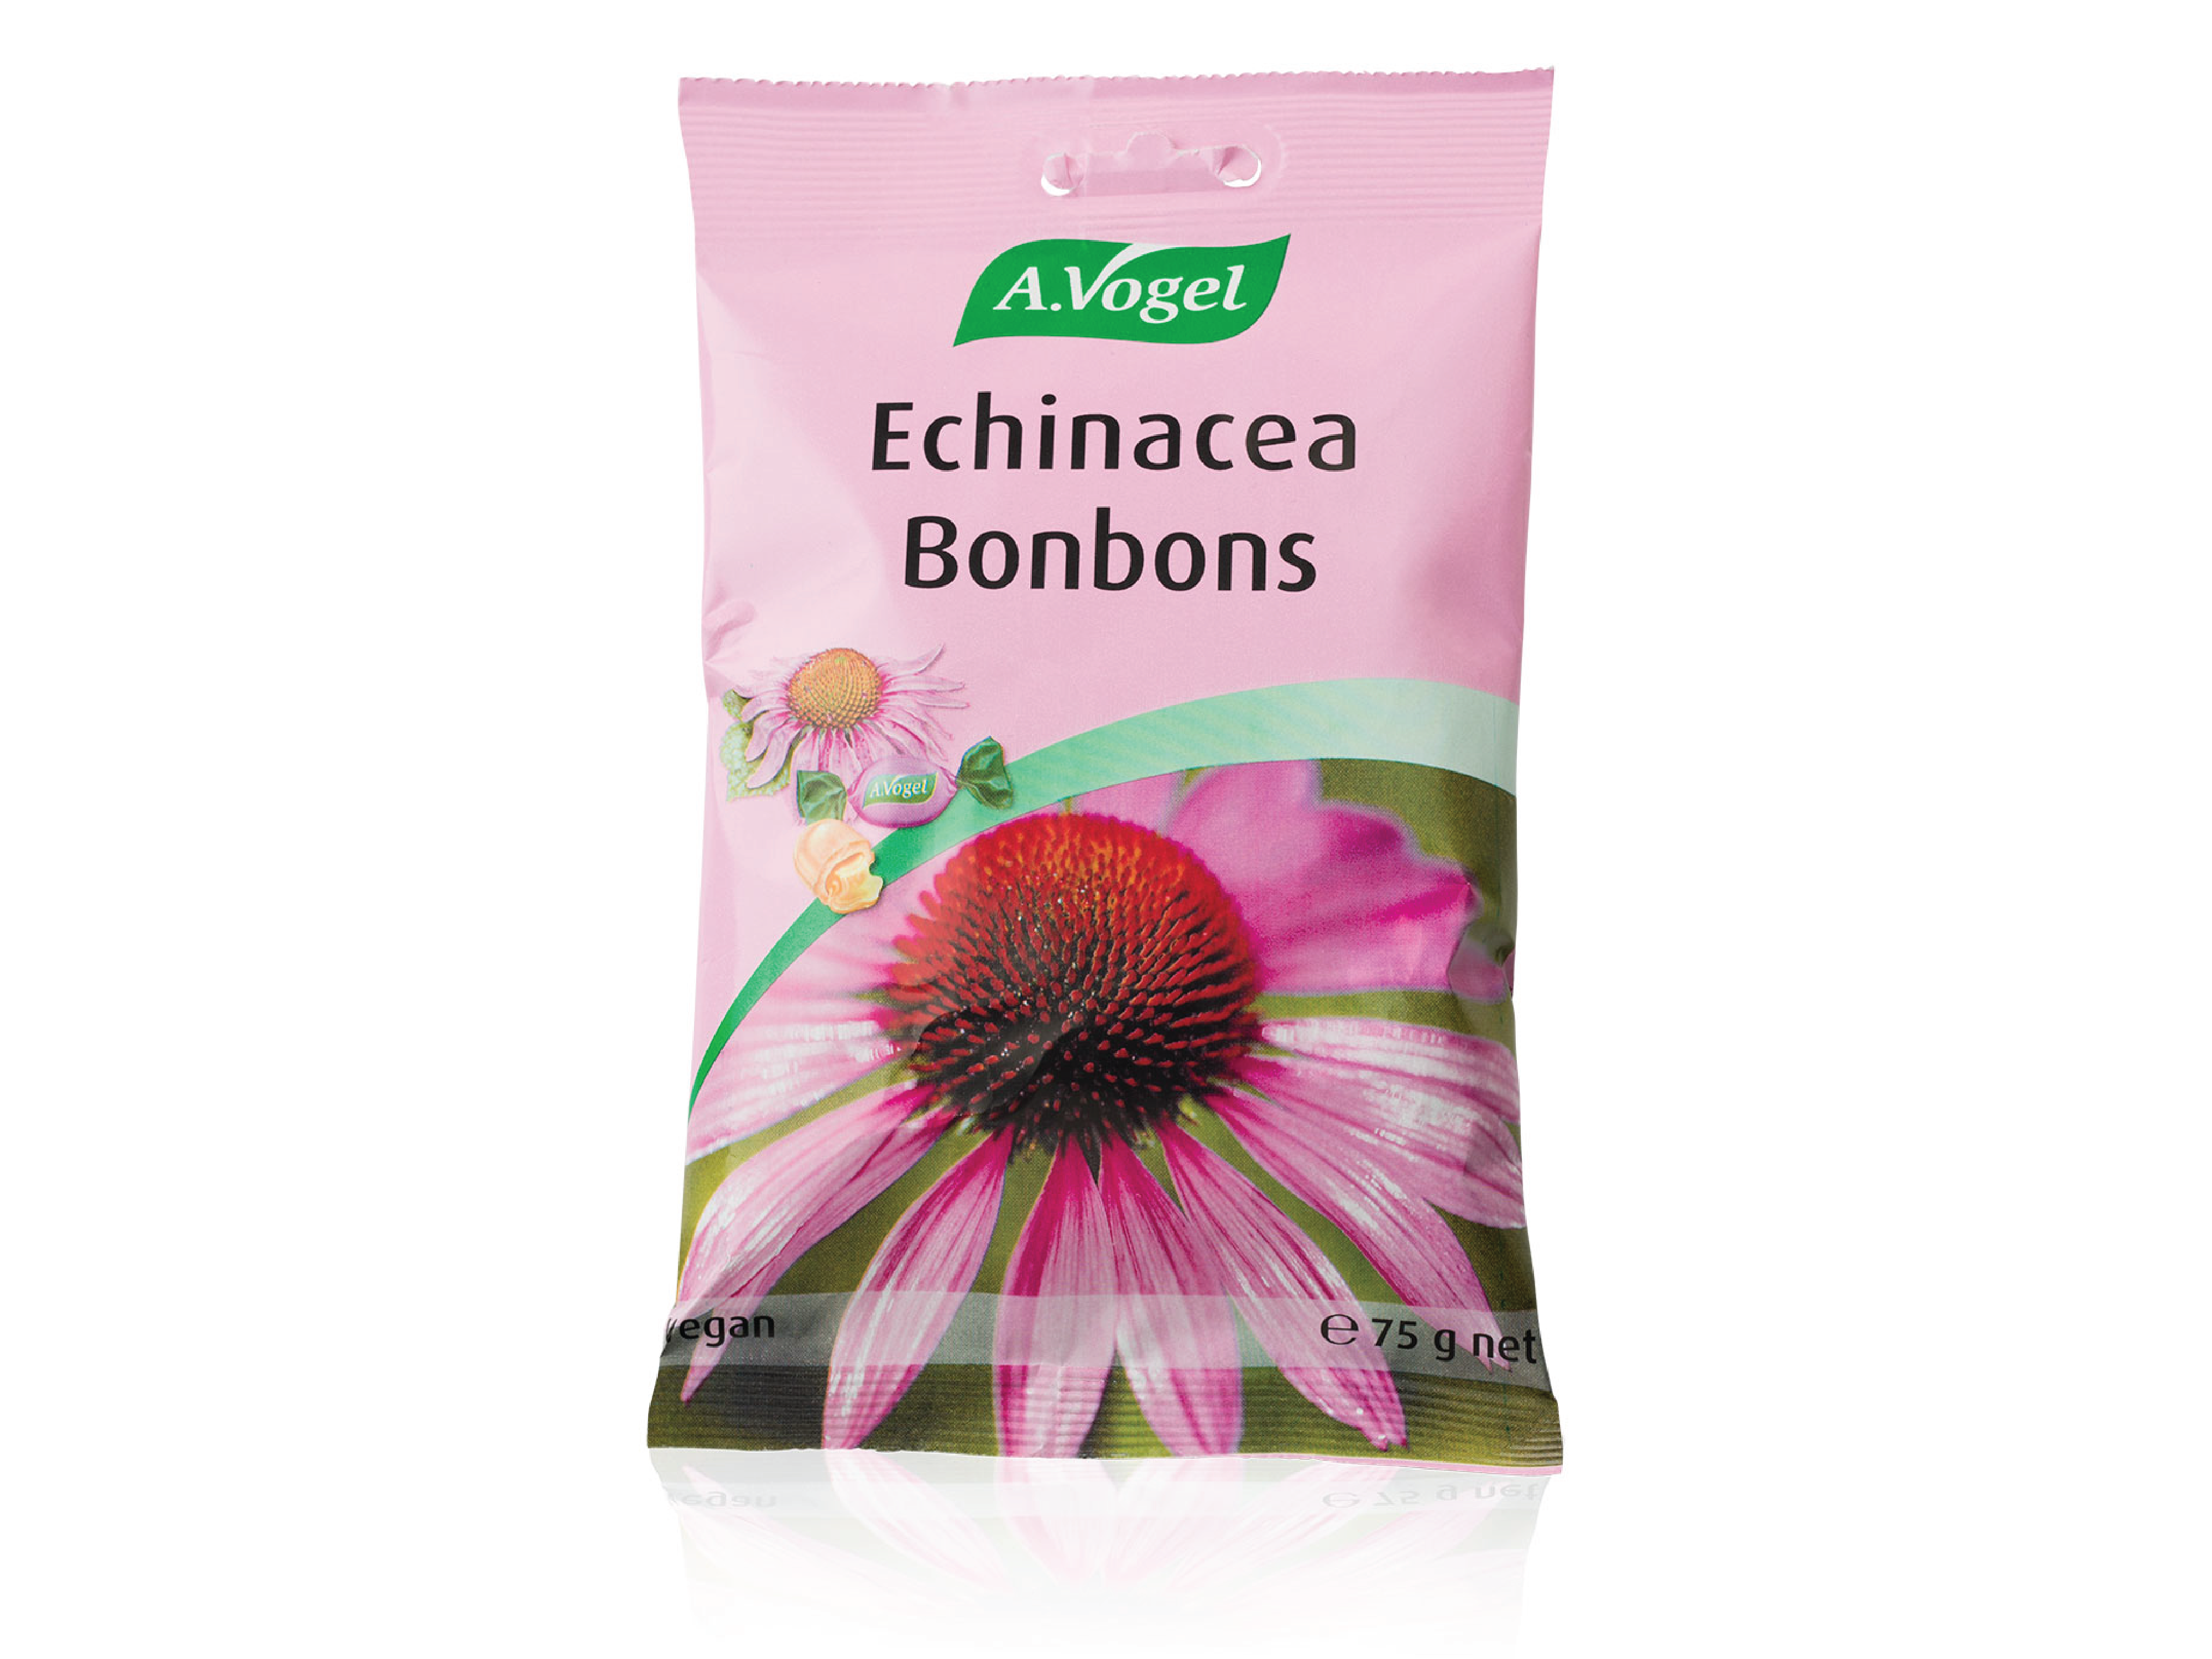 A.Vogel Echinacea Bonbons, 75 g